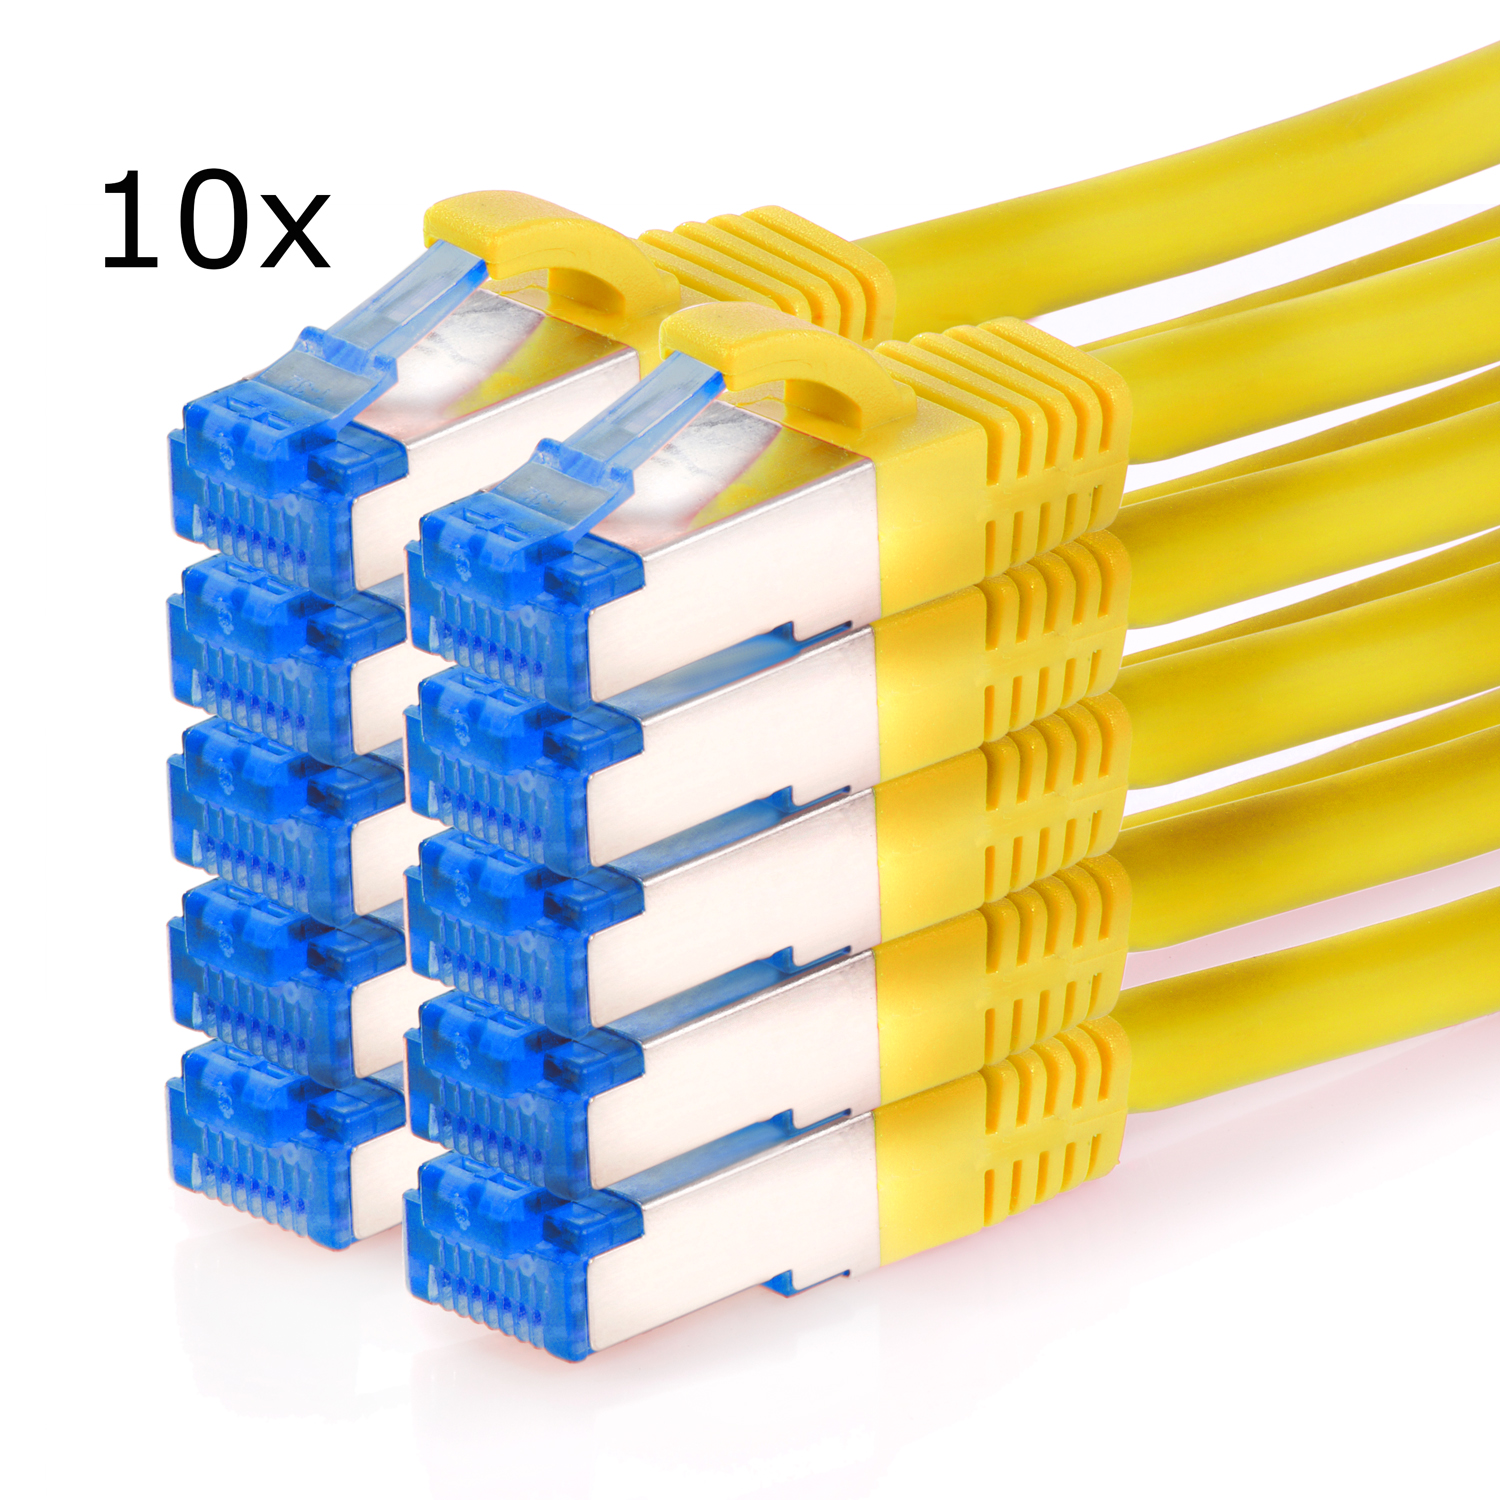 TPFNET 10er Pack 2m Patchkabel / 10GBit, Netzwerkkabel, 2 S/FTP gelb, m Netzwerkkabel